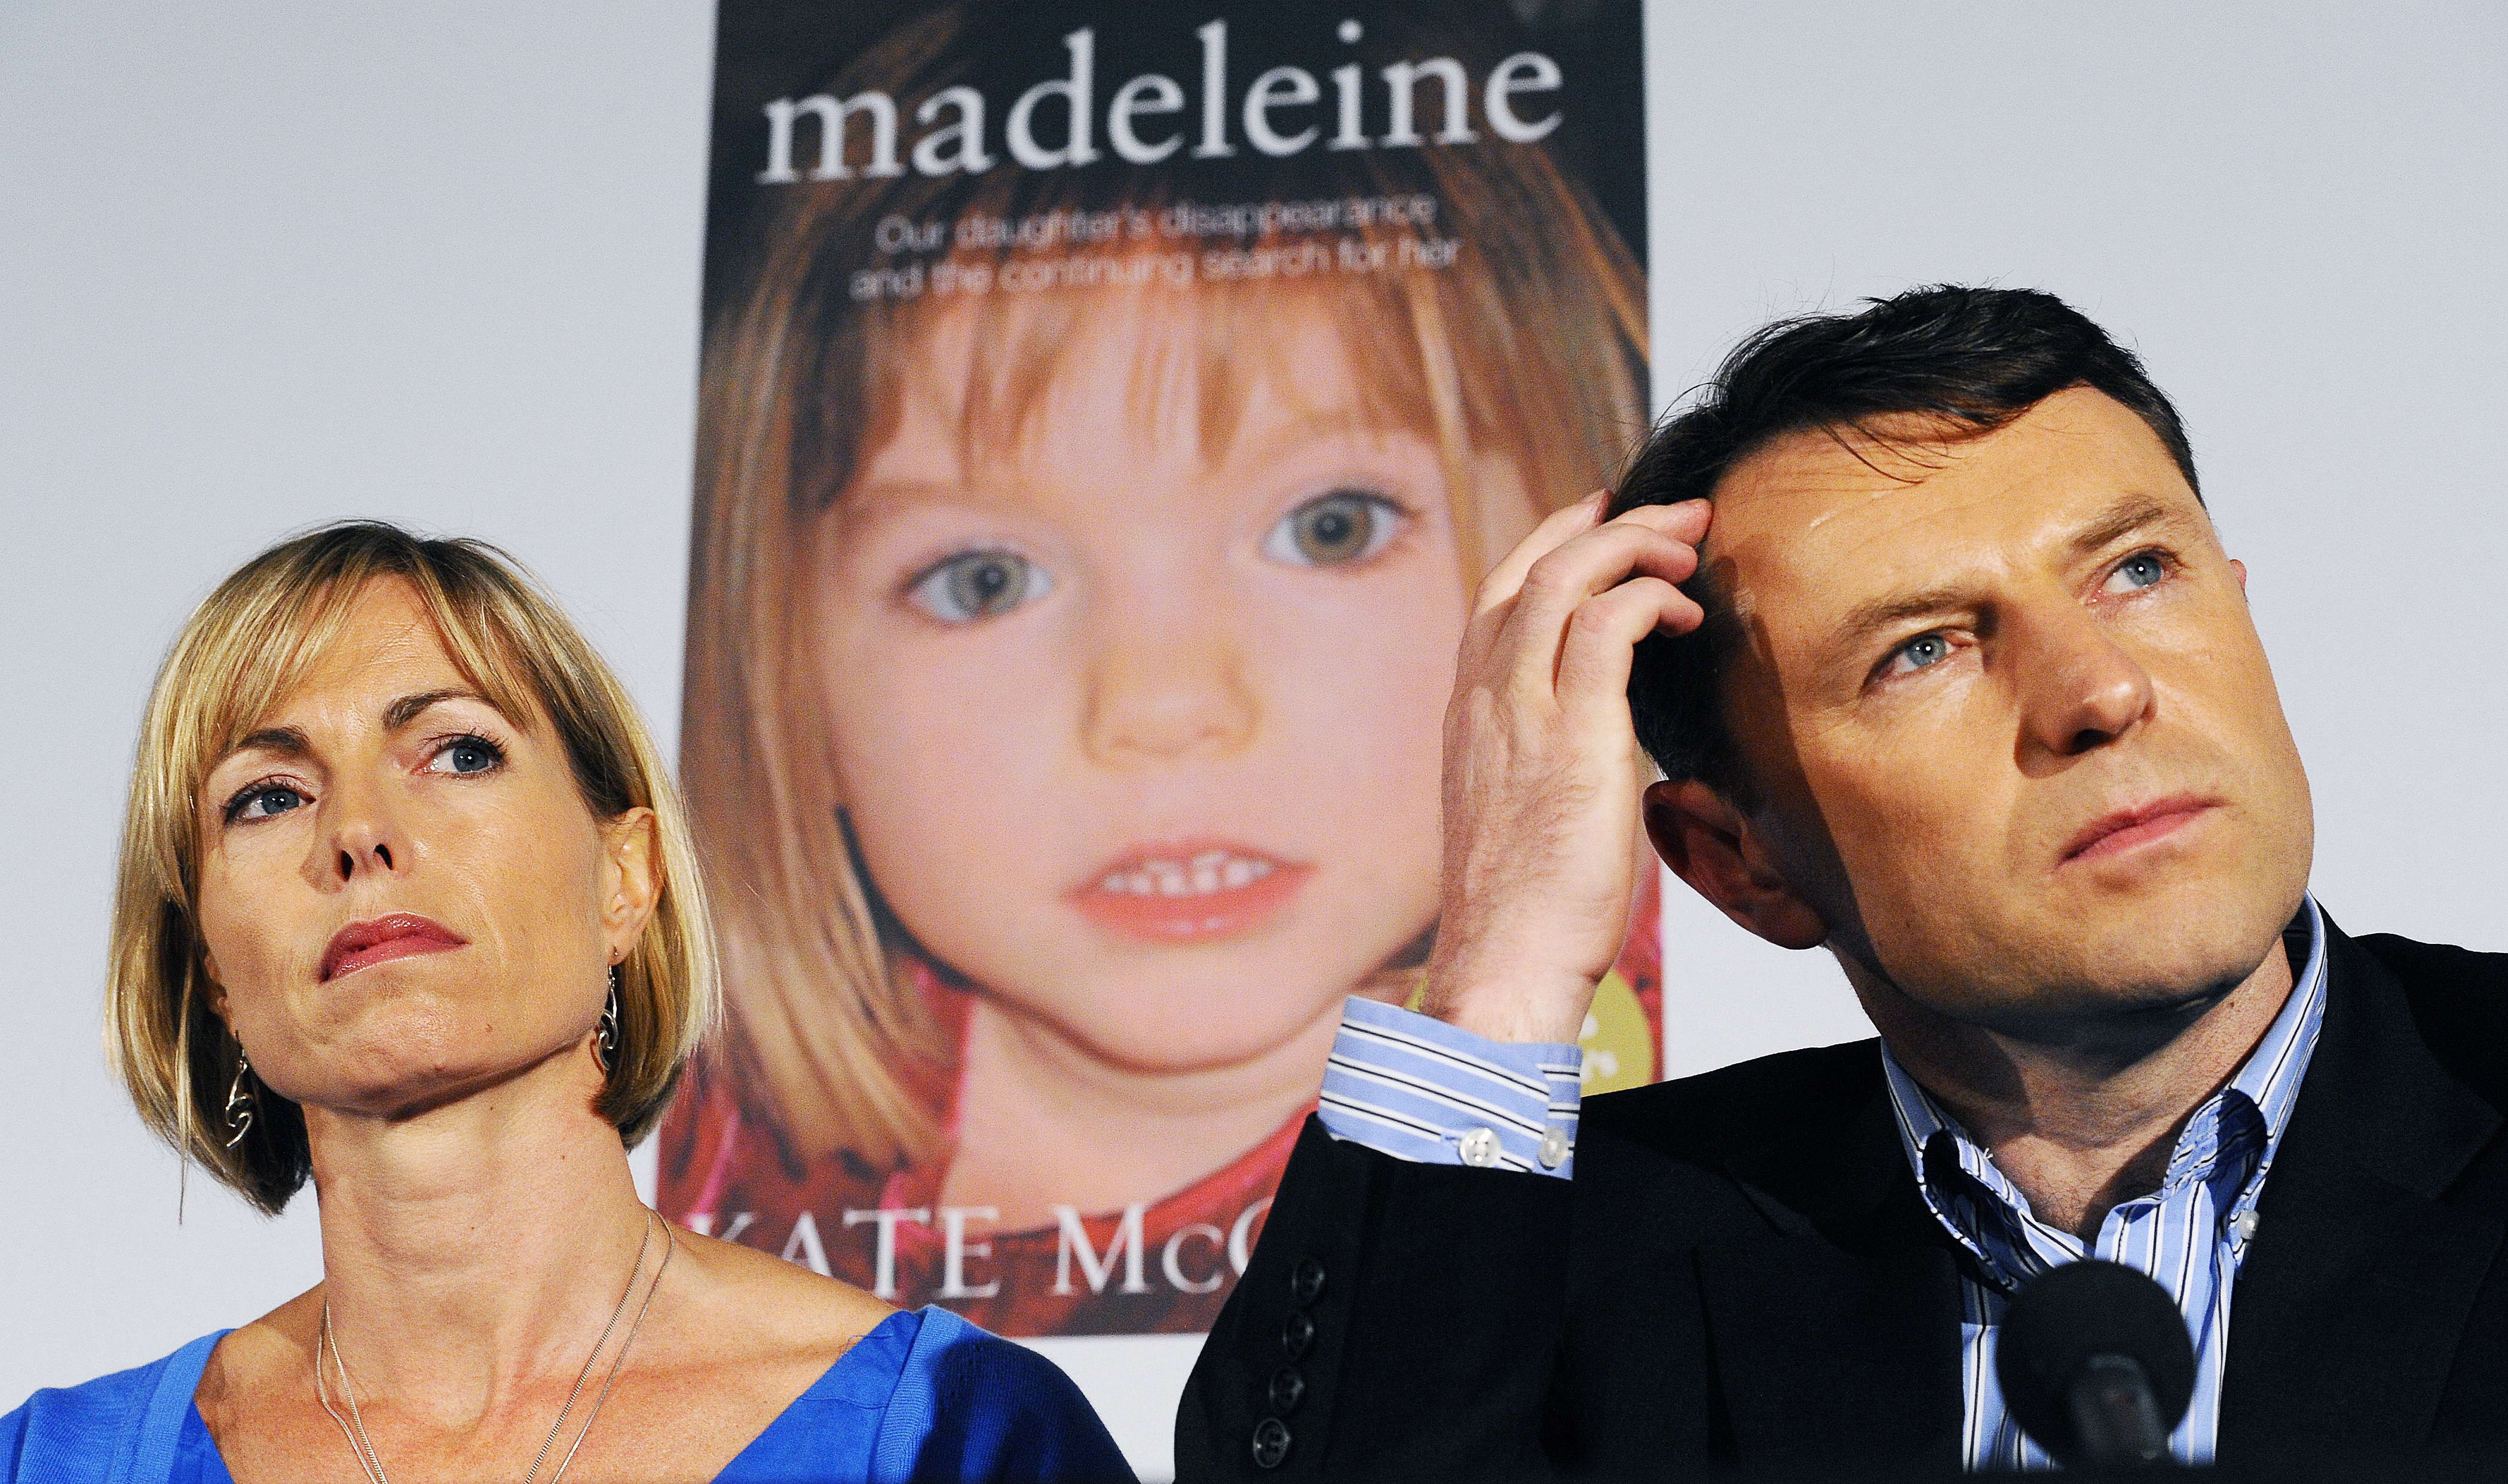 Madeleine McCann szülei, Kate és Gerry McCann, a háttérben lányuk poszterével 2011. május 12-én Londonban.